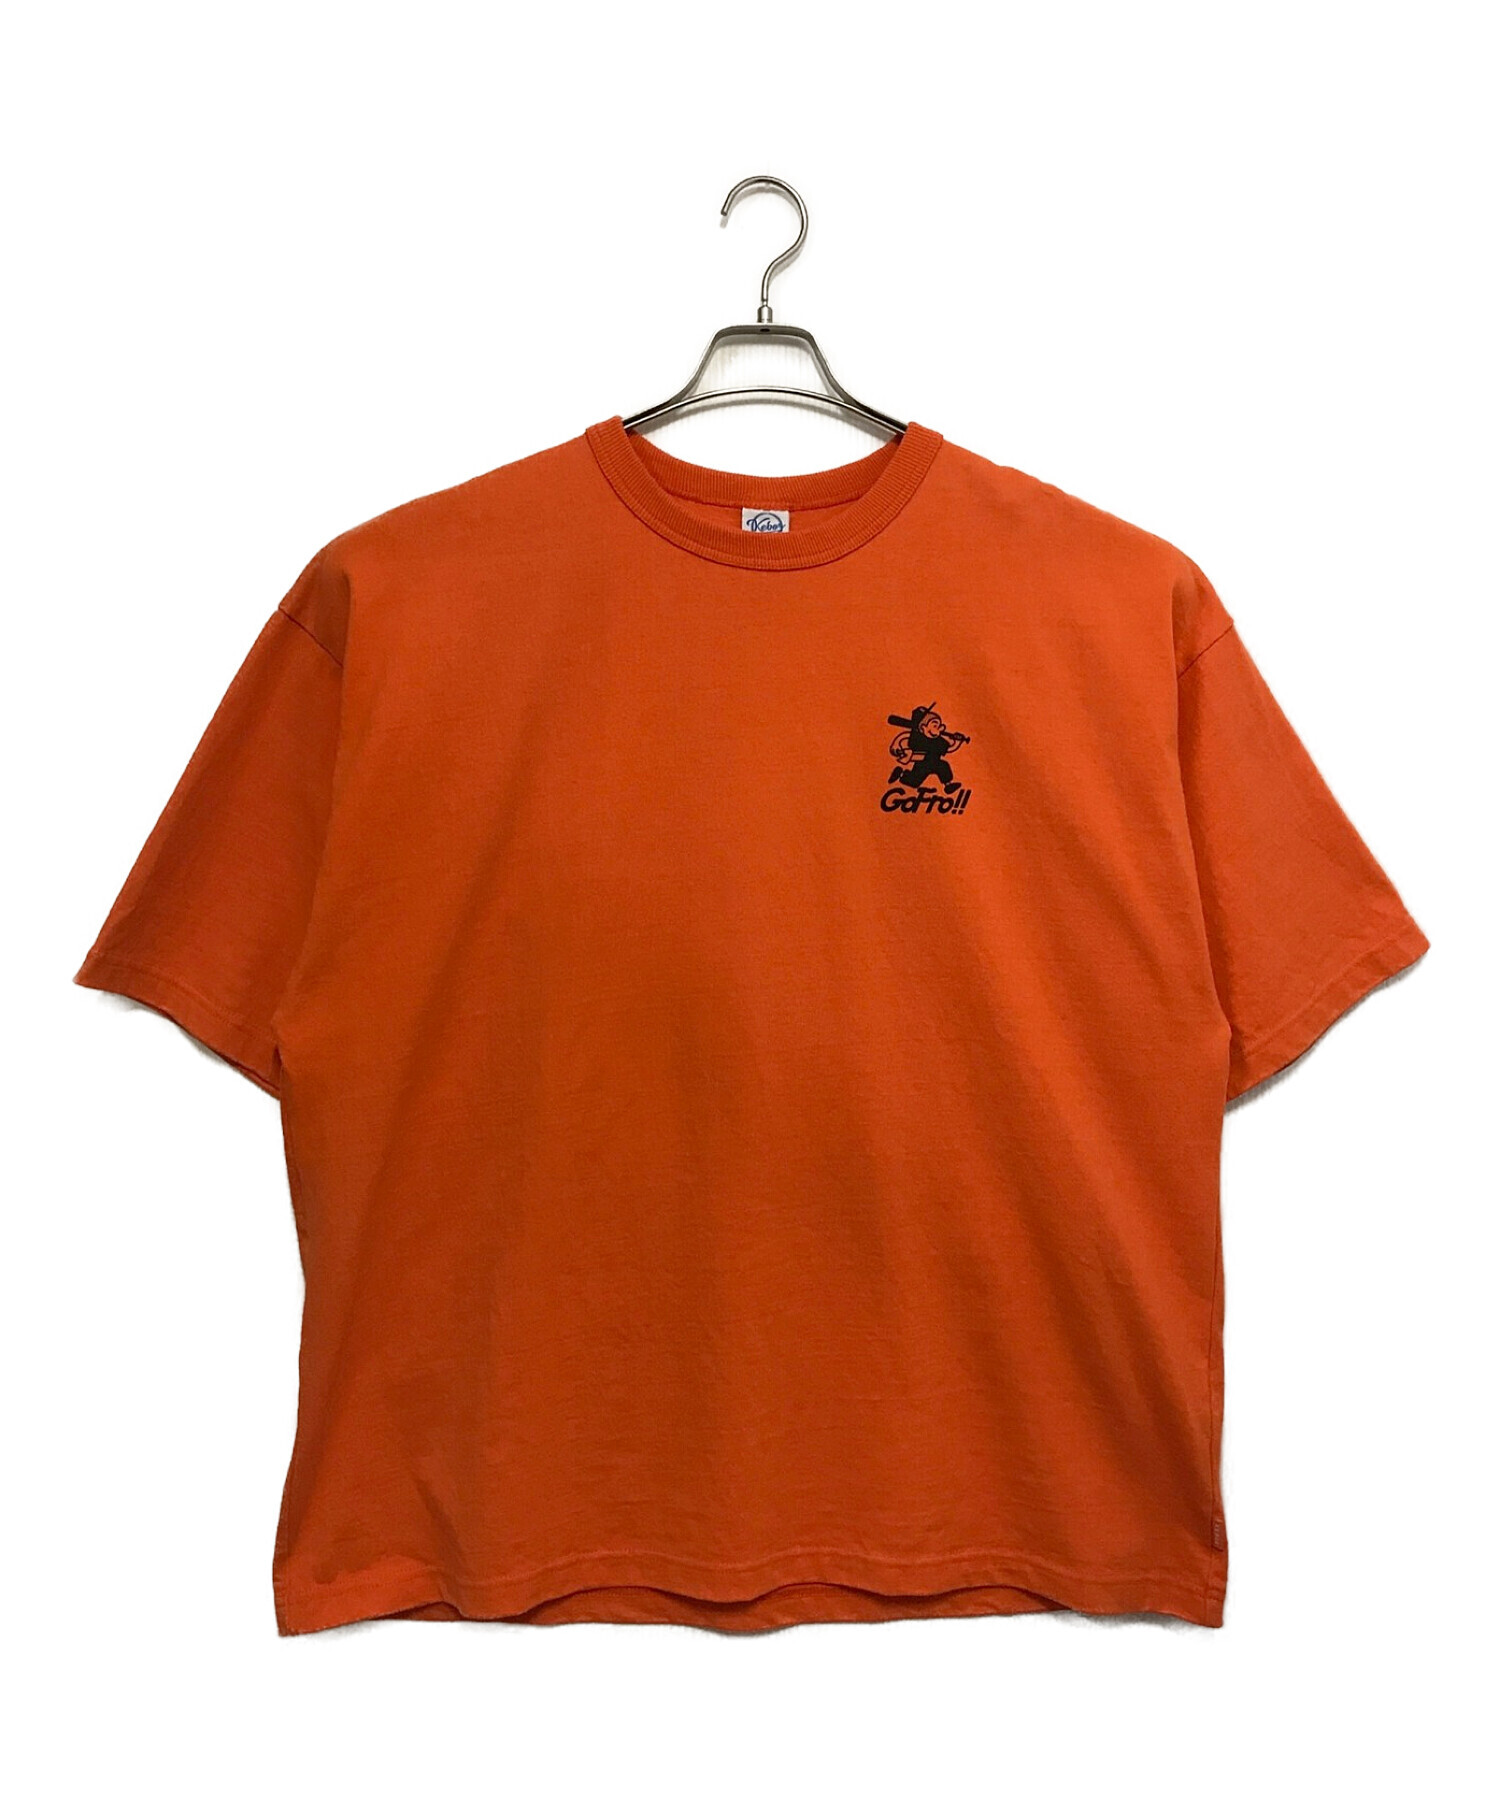 KEBOZ (ケボズ) FRO CLUB (フロクラブ) GoFro!!Tシャツ オレンジ サイズ:M